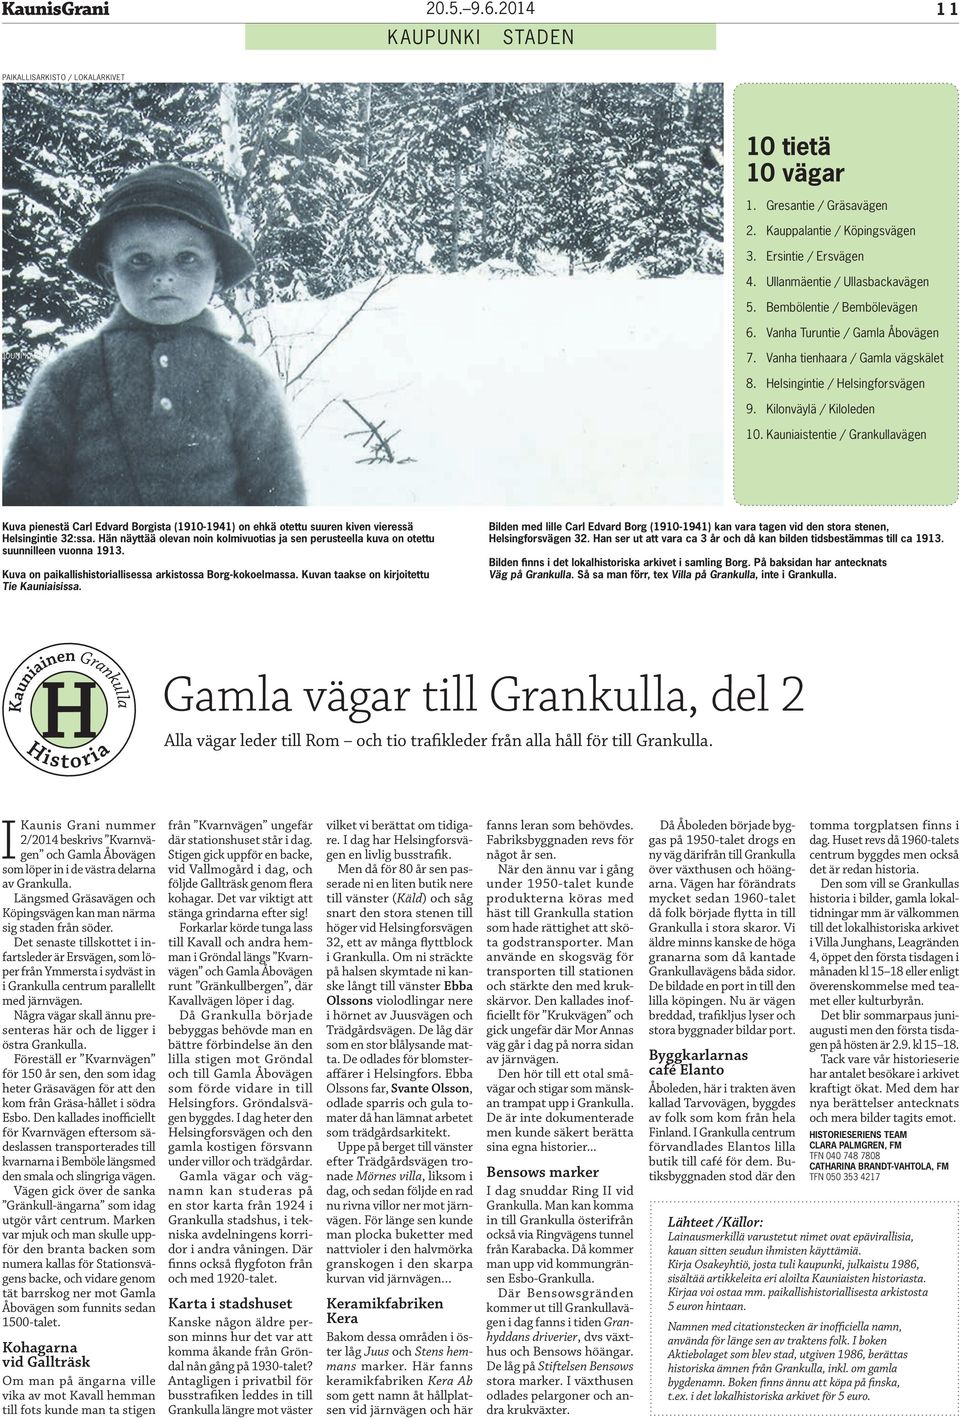 Kauniaistentie / Grankullavägen Kuva pienestä Carl Edvard Borgista (1910-1941) on ehkä otettu suuren kiven vieressä Helsingintie 32:ssa.